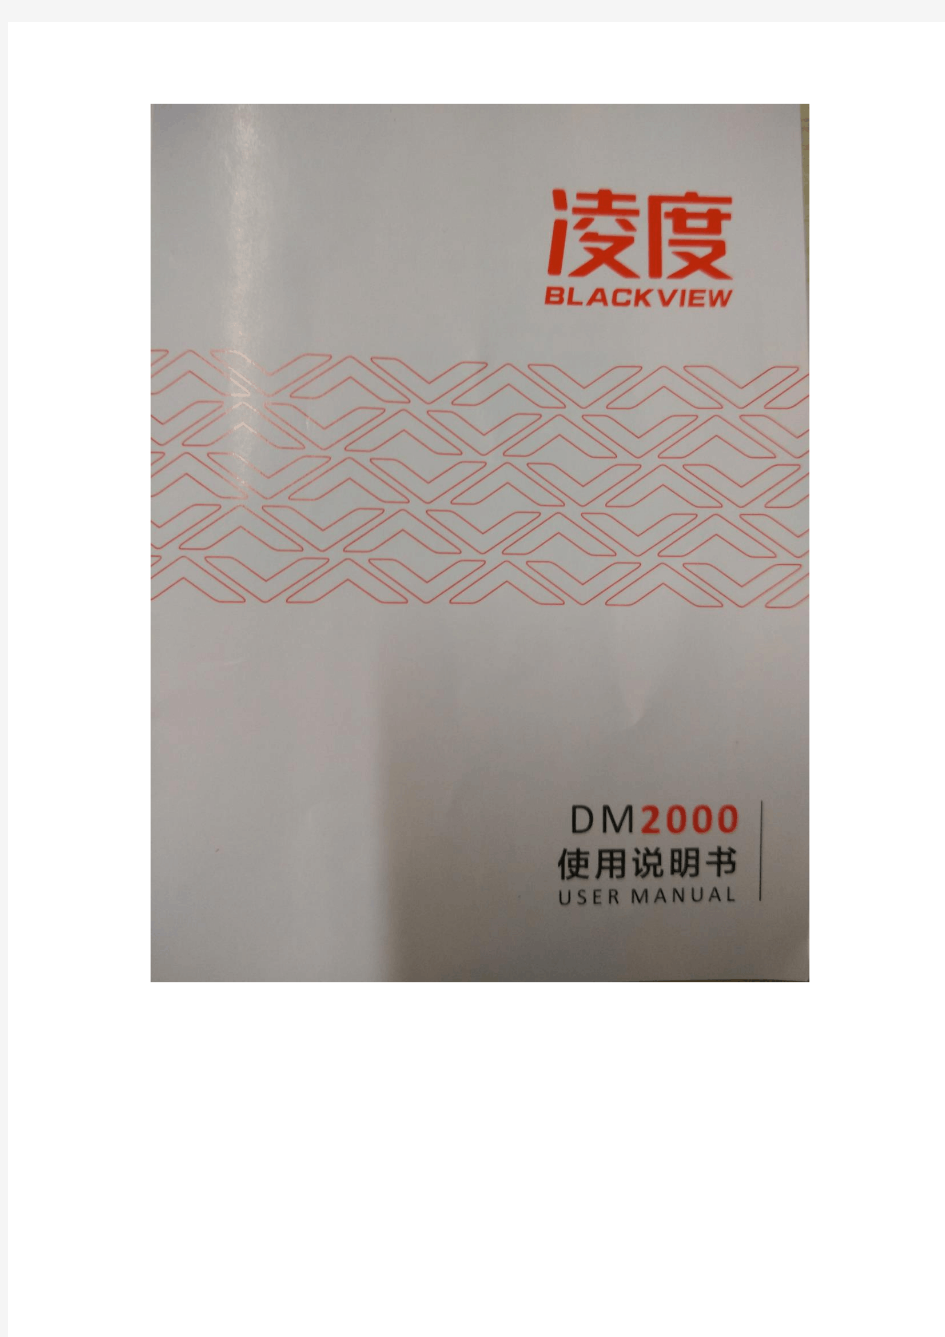 DM2000 User Manual